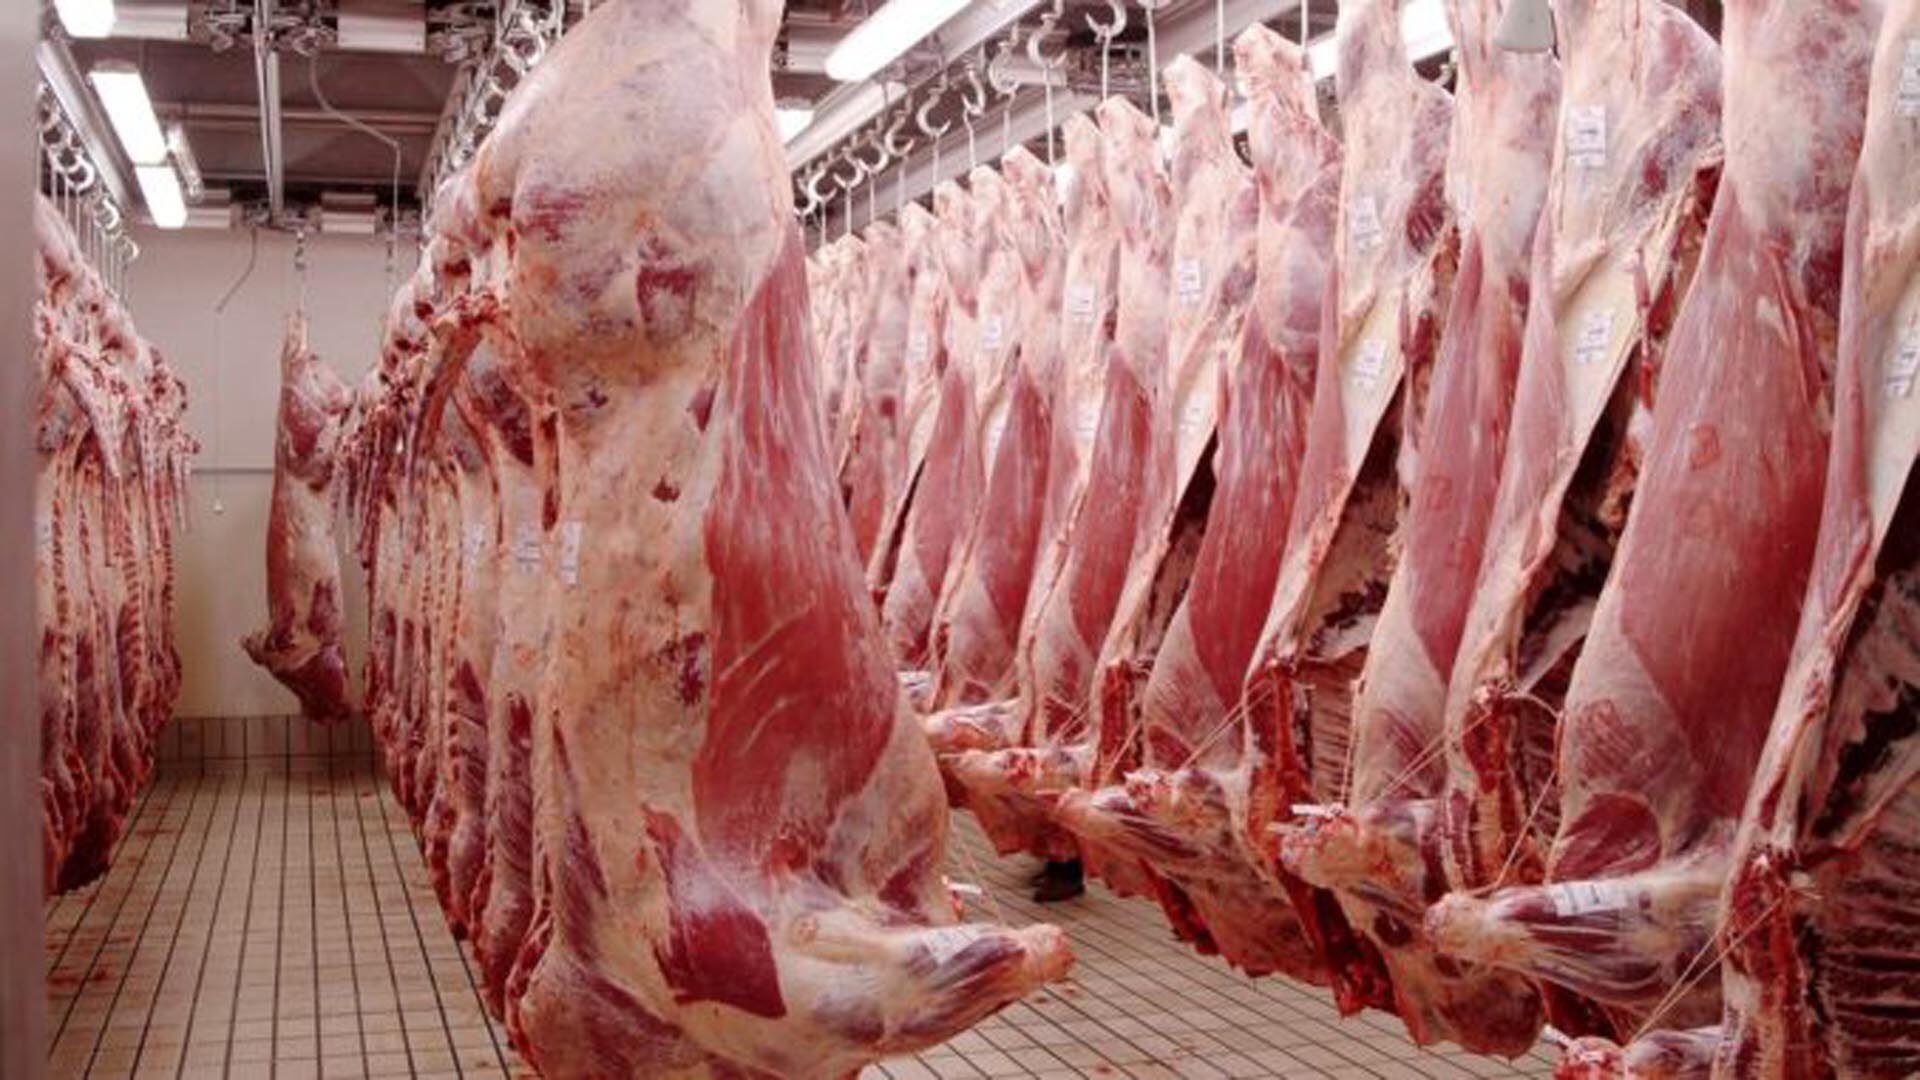 Las restricciones para exportar carne vacuna siguen provocando enormes perjuicios a la cadena de ganados y carnes. 